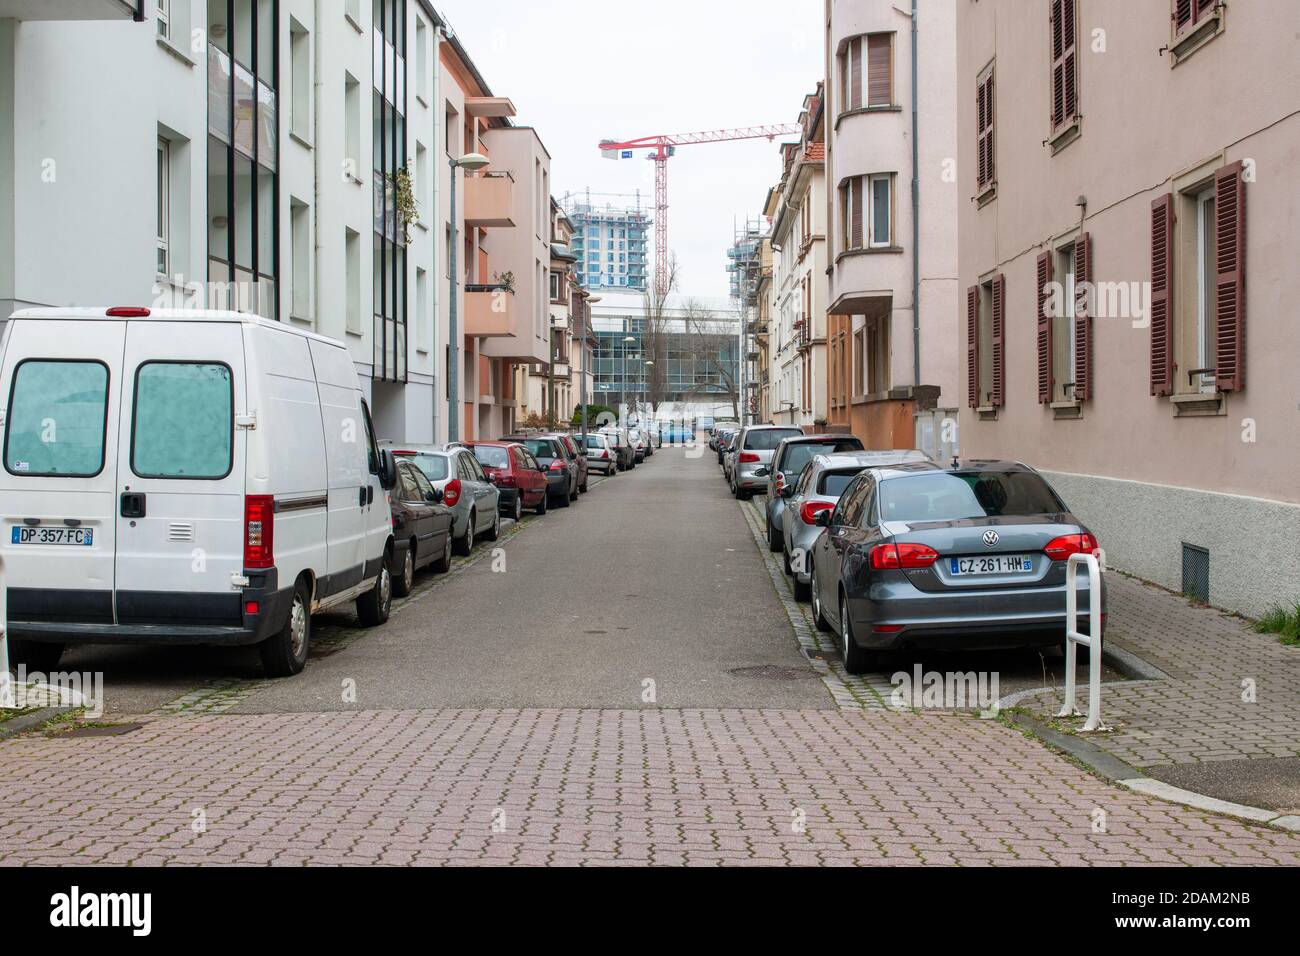 Straßburg, Frankreich - 2. Dezember 2016: Leere Straße in Straßburg mit Reihen von geparkten Autos und Baustelle in Perspektive Stockfoto